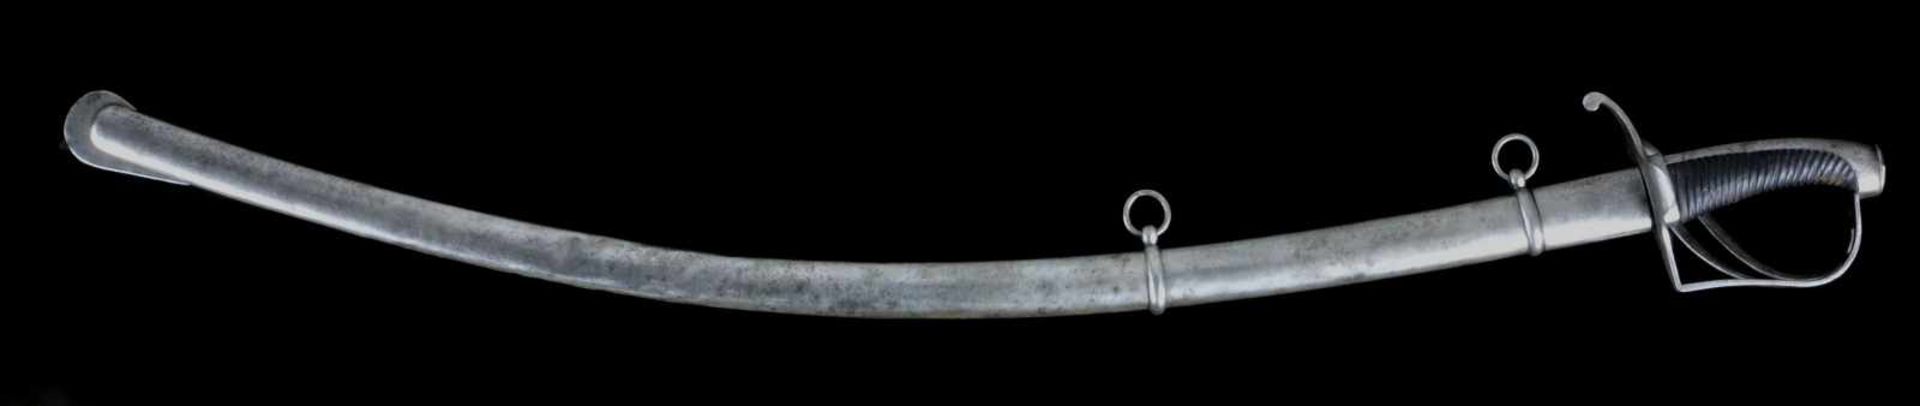 A GERMAN BAVARIAN M1788 SWORD, SO CALLED “RUMFORD SABER” IN SCABBARD, WITH WOOTZ STEEL BLADE. - Bild 8 aus 15